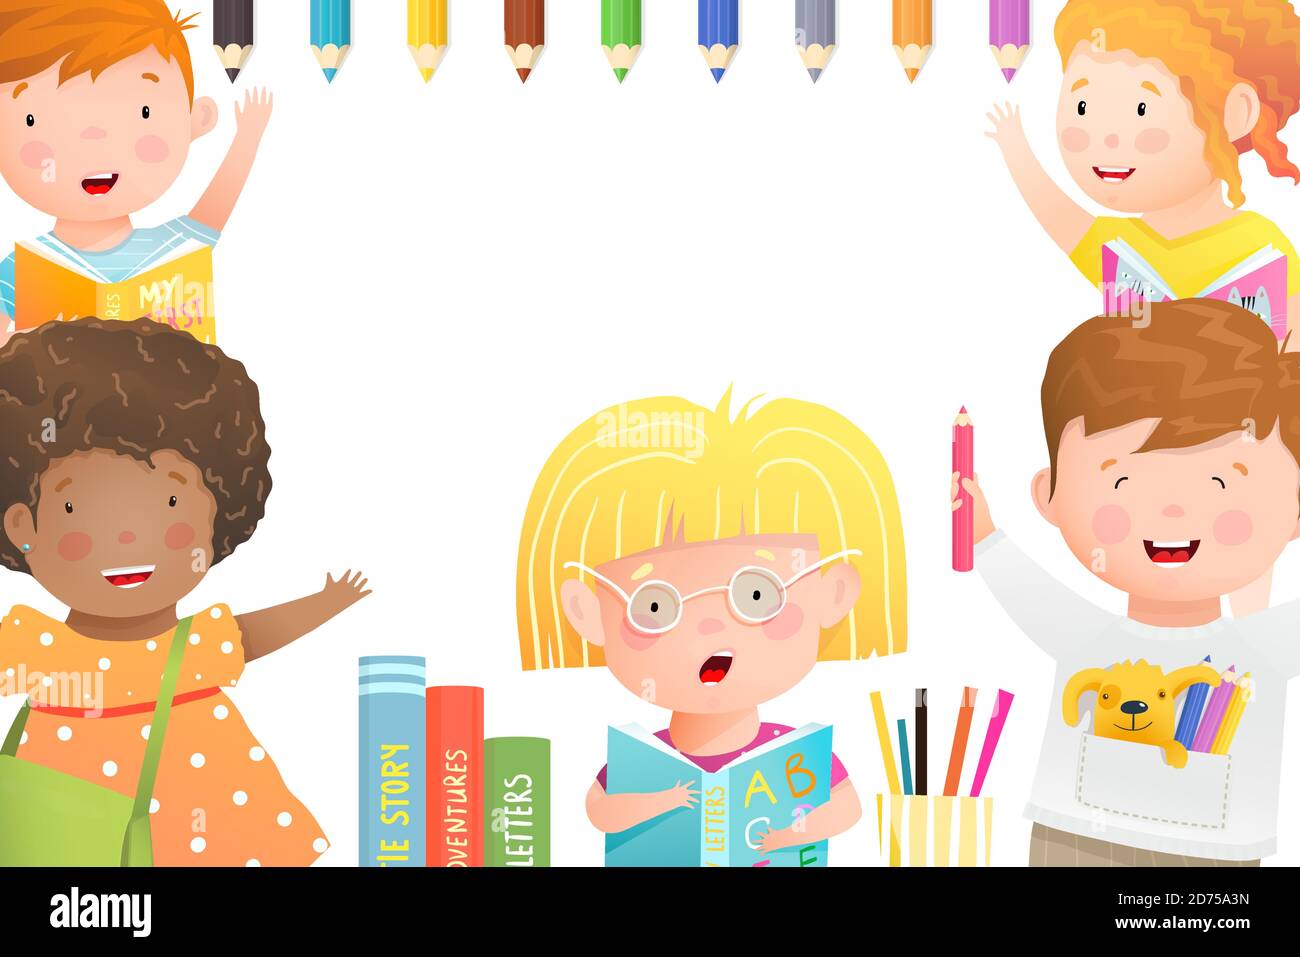 Kinder spielen, studieren und zeichnen Poster oder Banner Cartoon-Design für Kinder Aktivitäten. Kindergarten oder Schulplakat. Stock Vektor